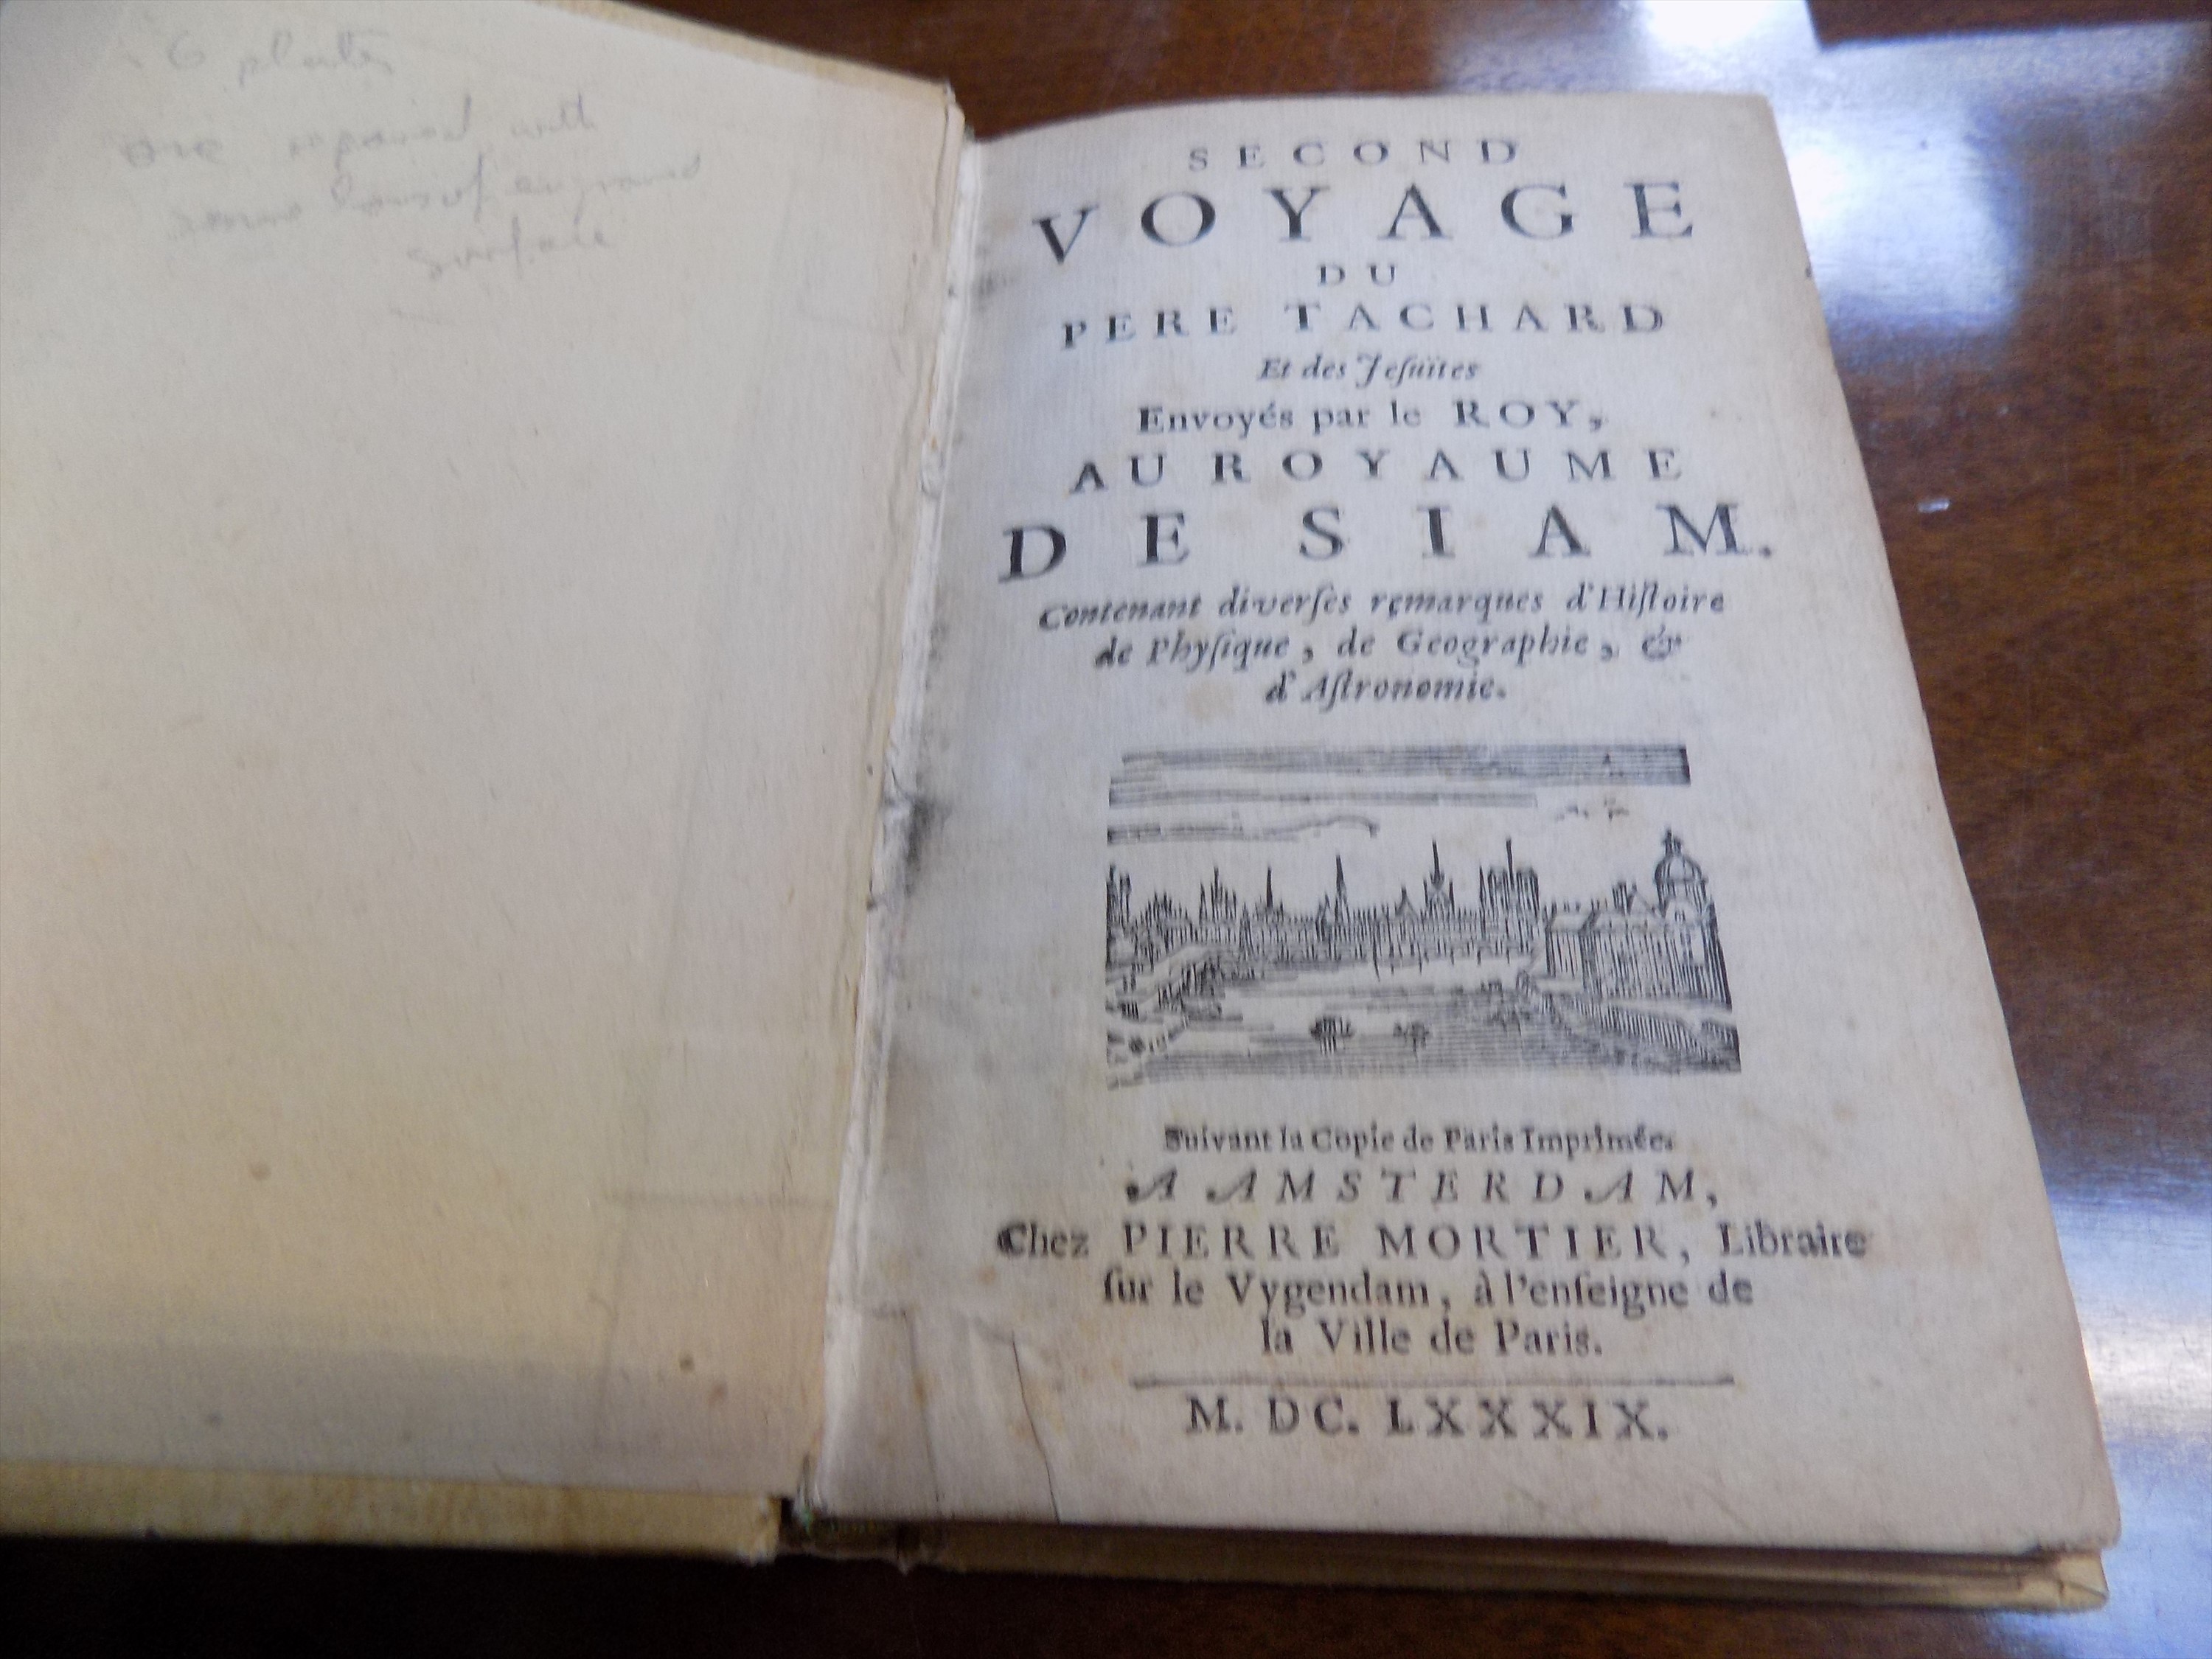 TACHARD (GUY) "Second Voyage du Pere Tachard et des Vesuites Envoyes par le Roy au Royaume de Siam."